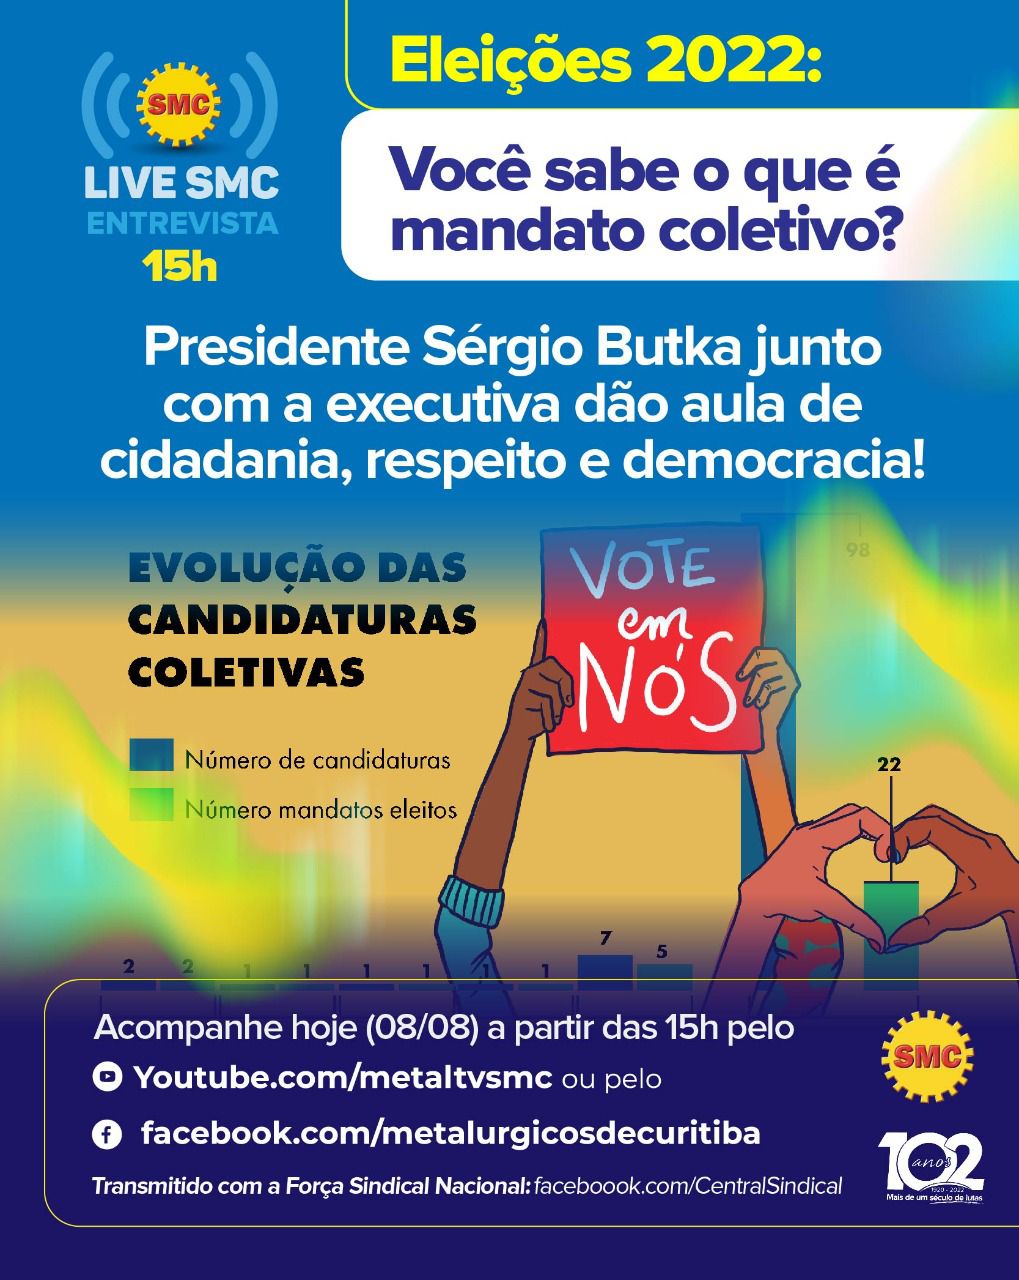 Live SMC: Eleições 2022: Você sabe o que é mandato coletivo?